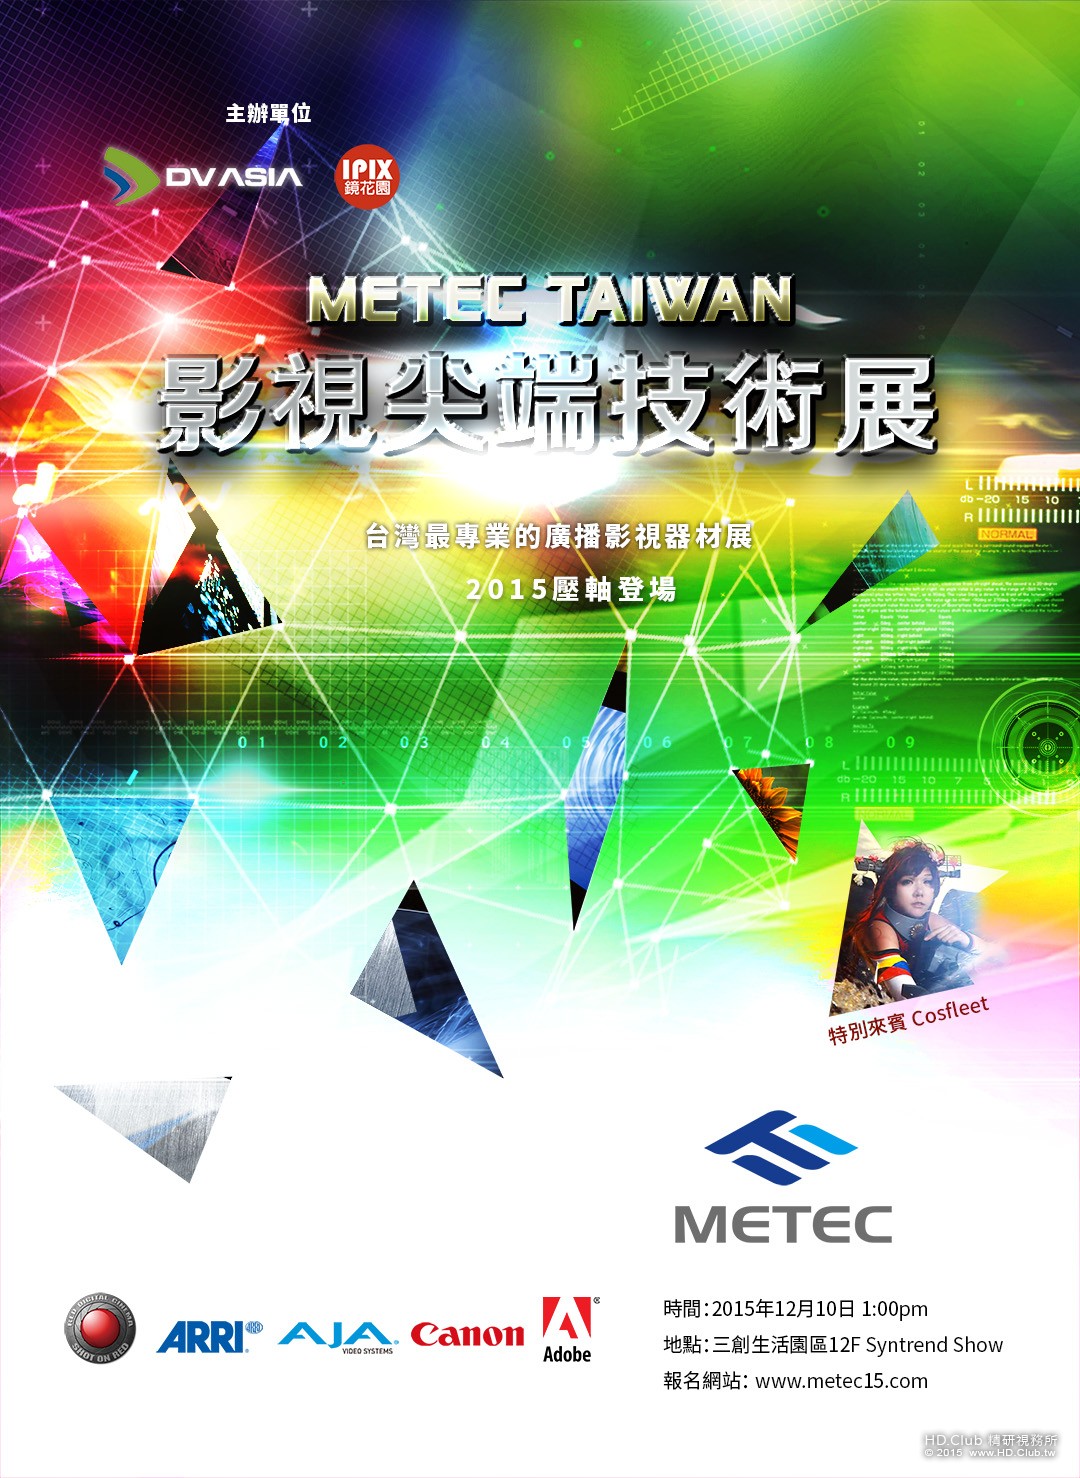 METEC TAIWAN_DM.jpg